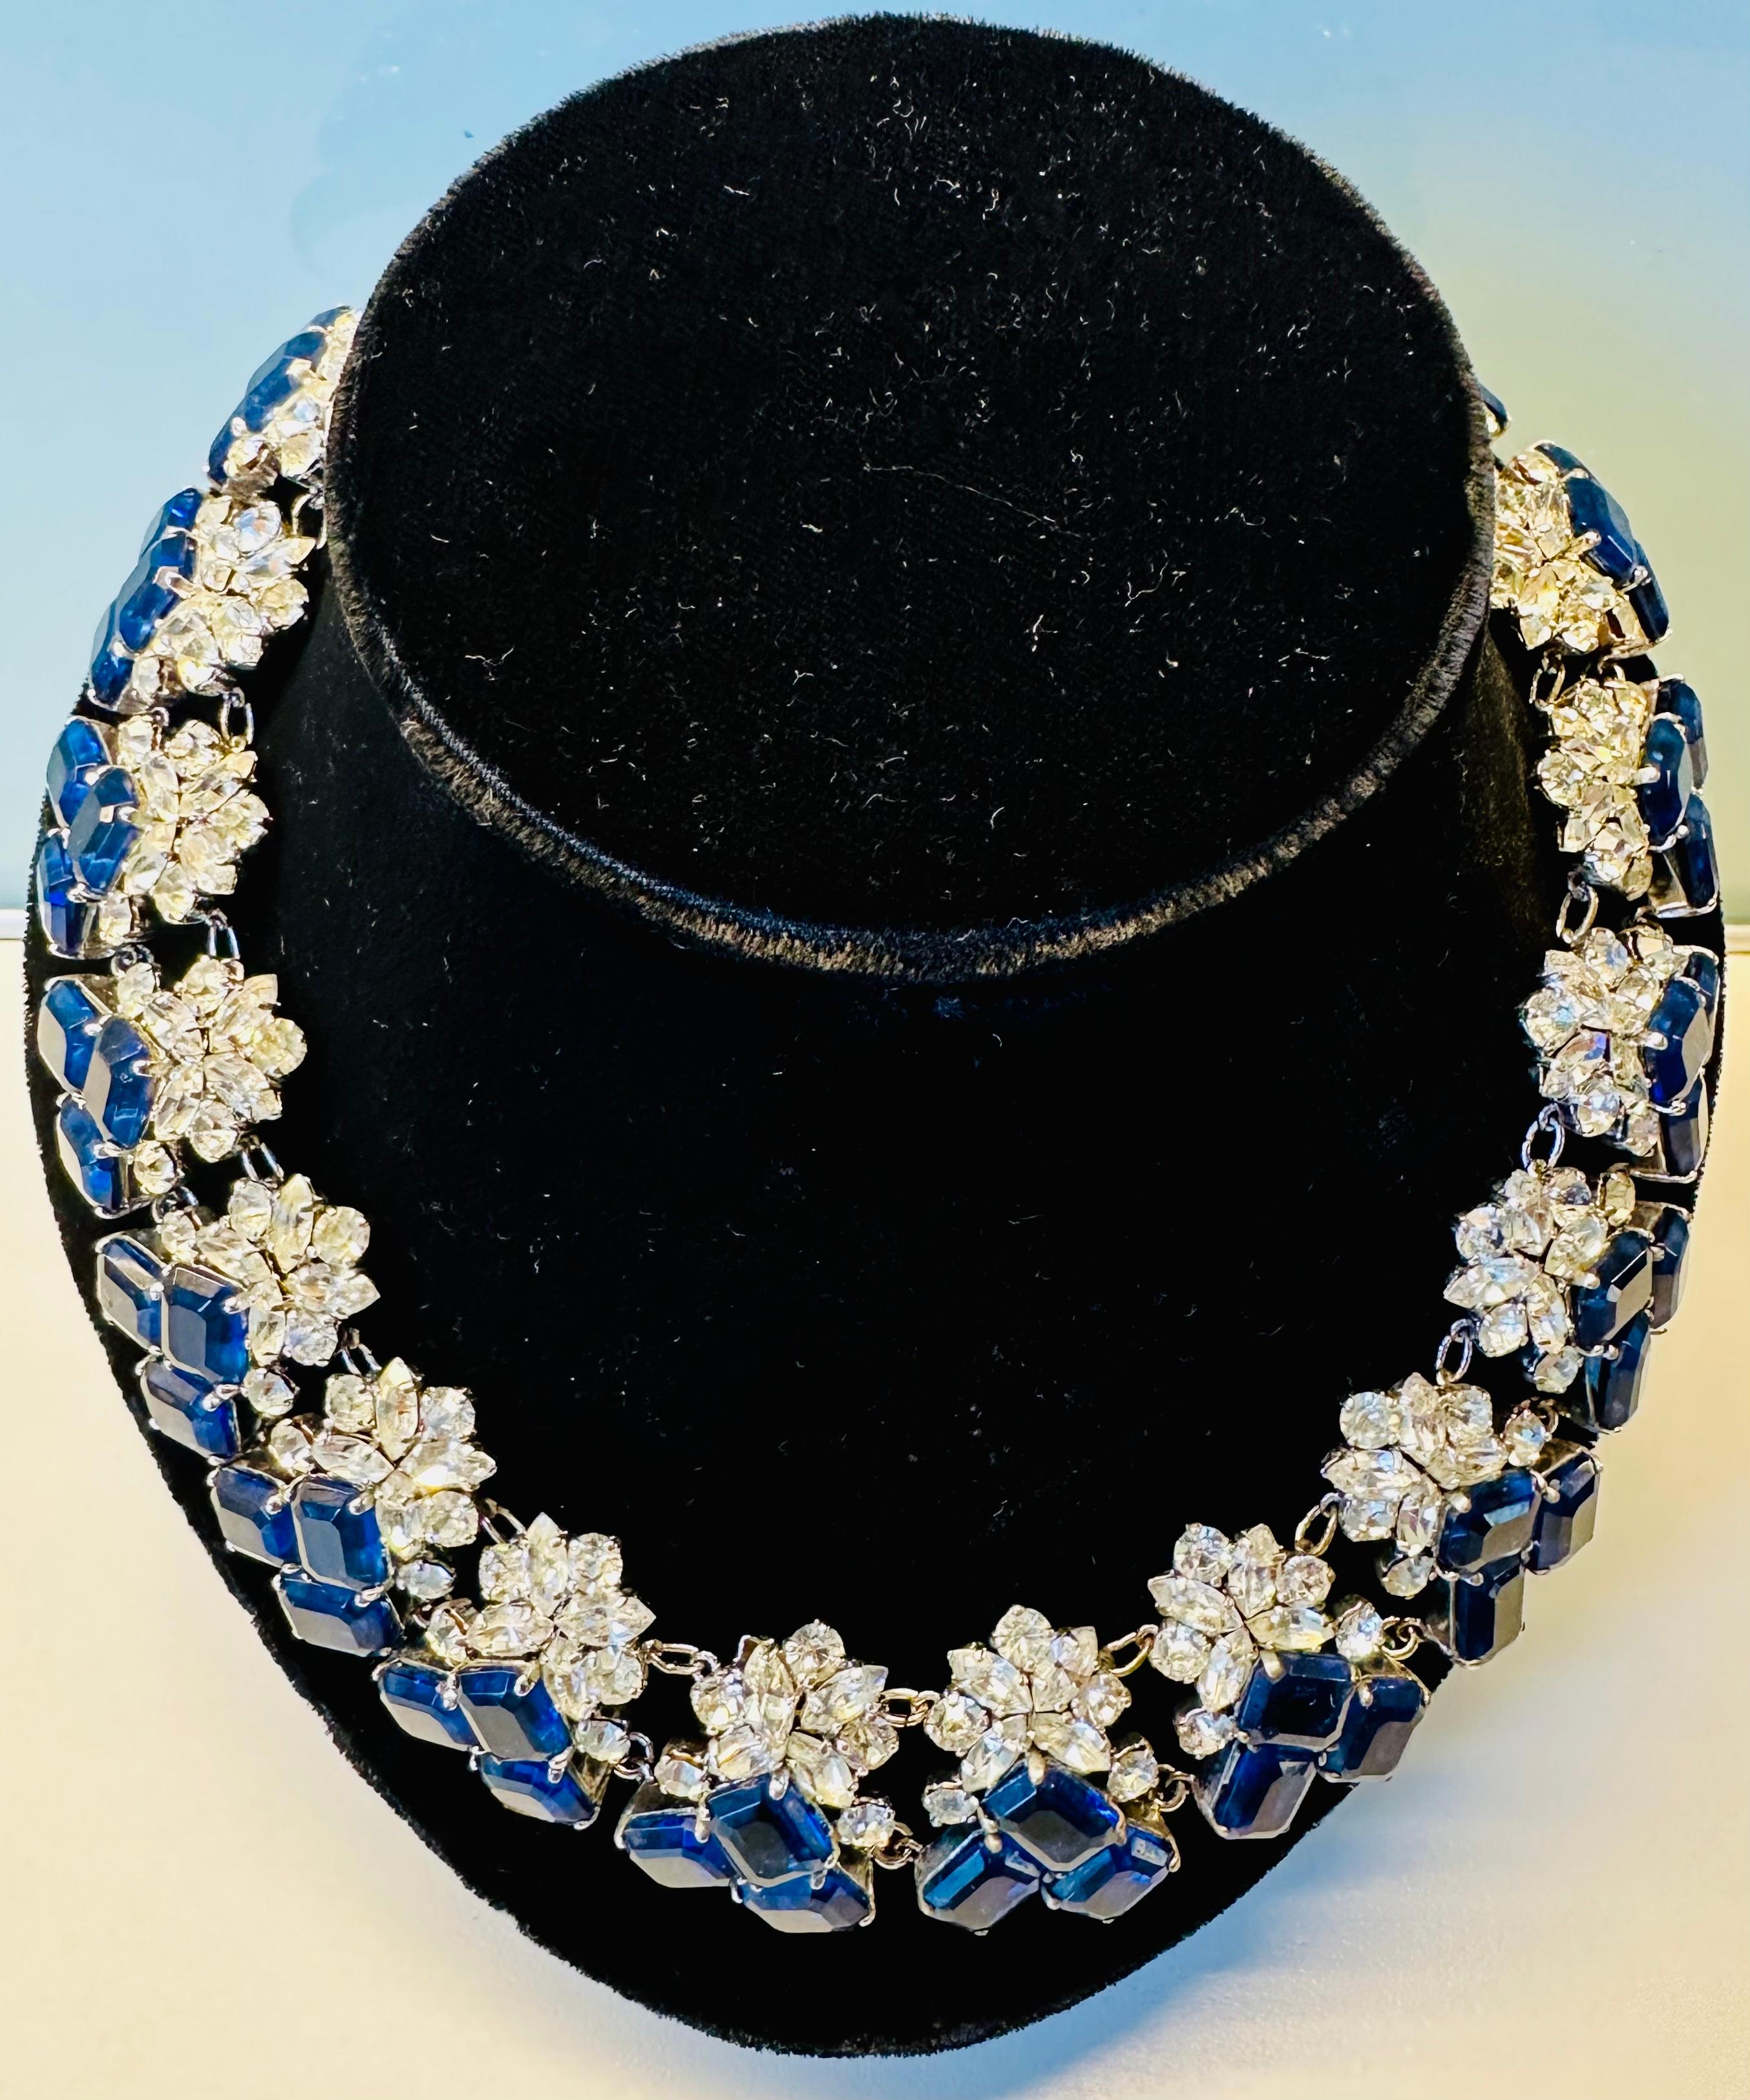 Un superbe exemple de collier Christian Dior des années 1960, avec des cristaux bleus et clairs sertis.  Ce collier est un exemple classique du design élégant et sophistiqué de Dior. Il est composé d'une série de cristaux bleus et clairs sertis dans